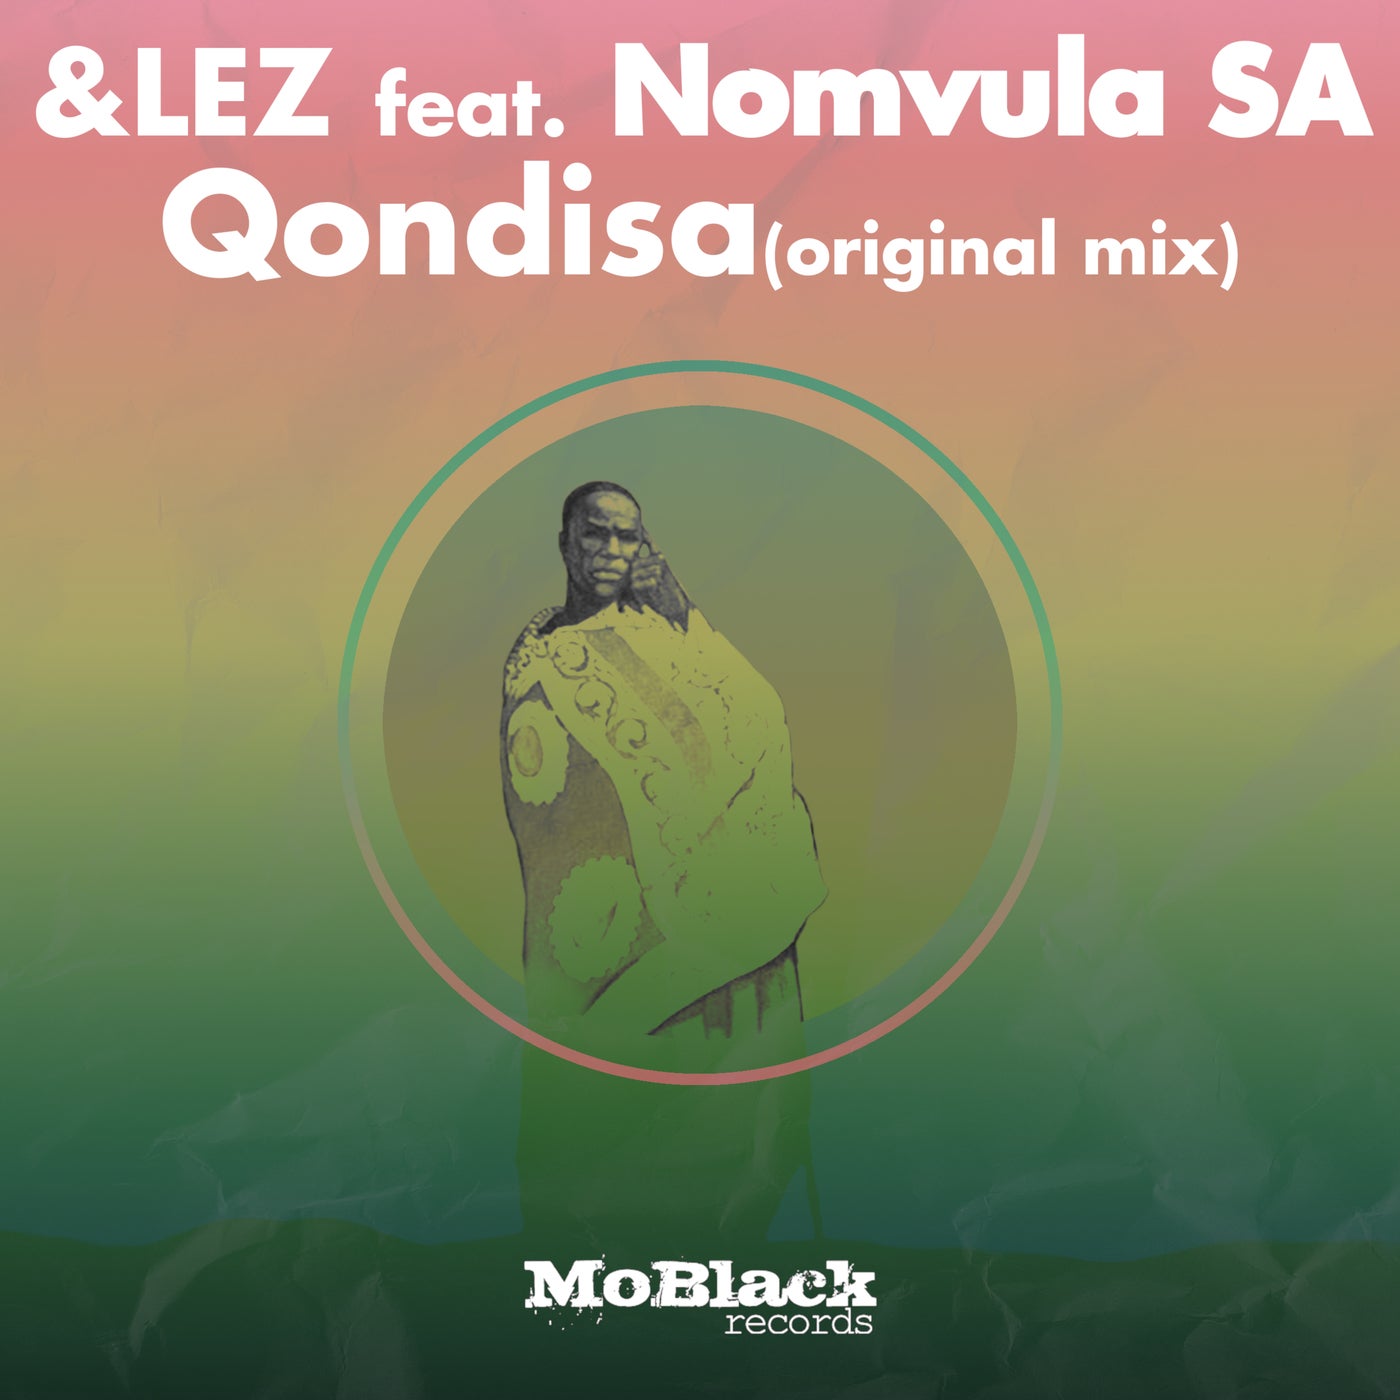 &lez - Qondisa feat. Nomvula SA (Original Mix)